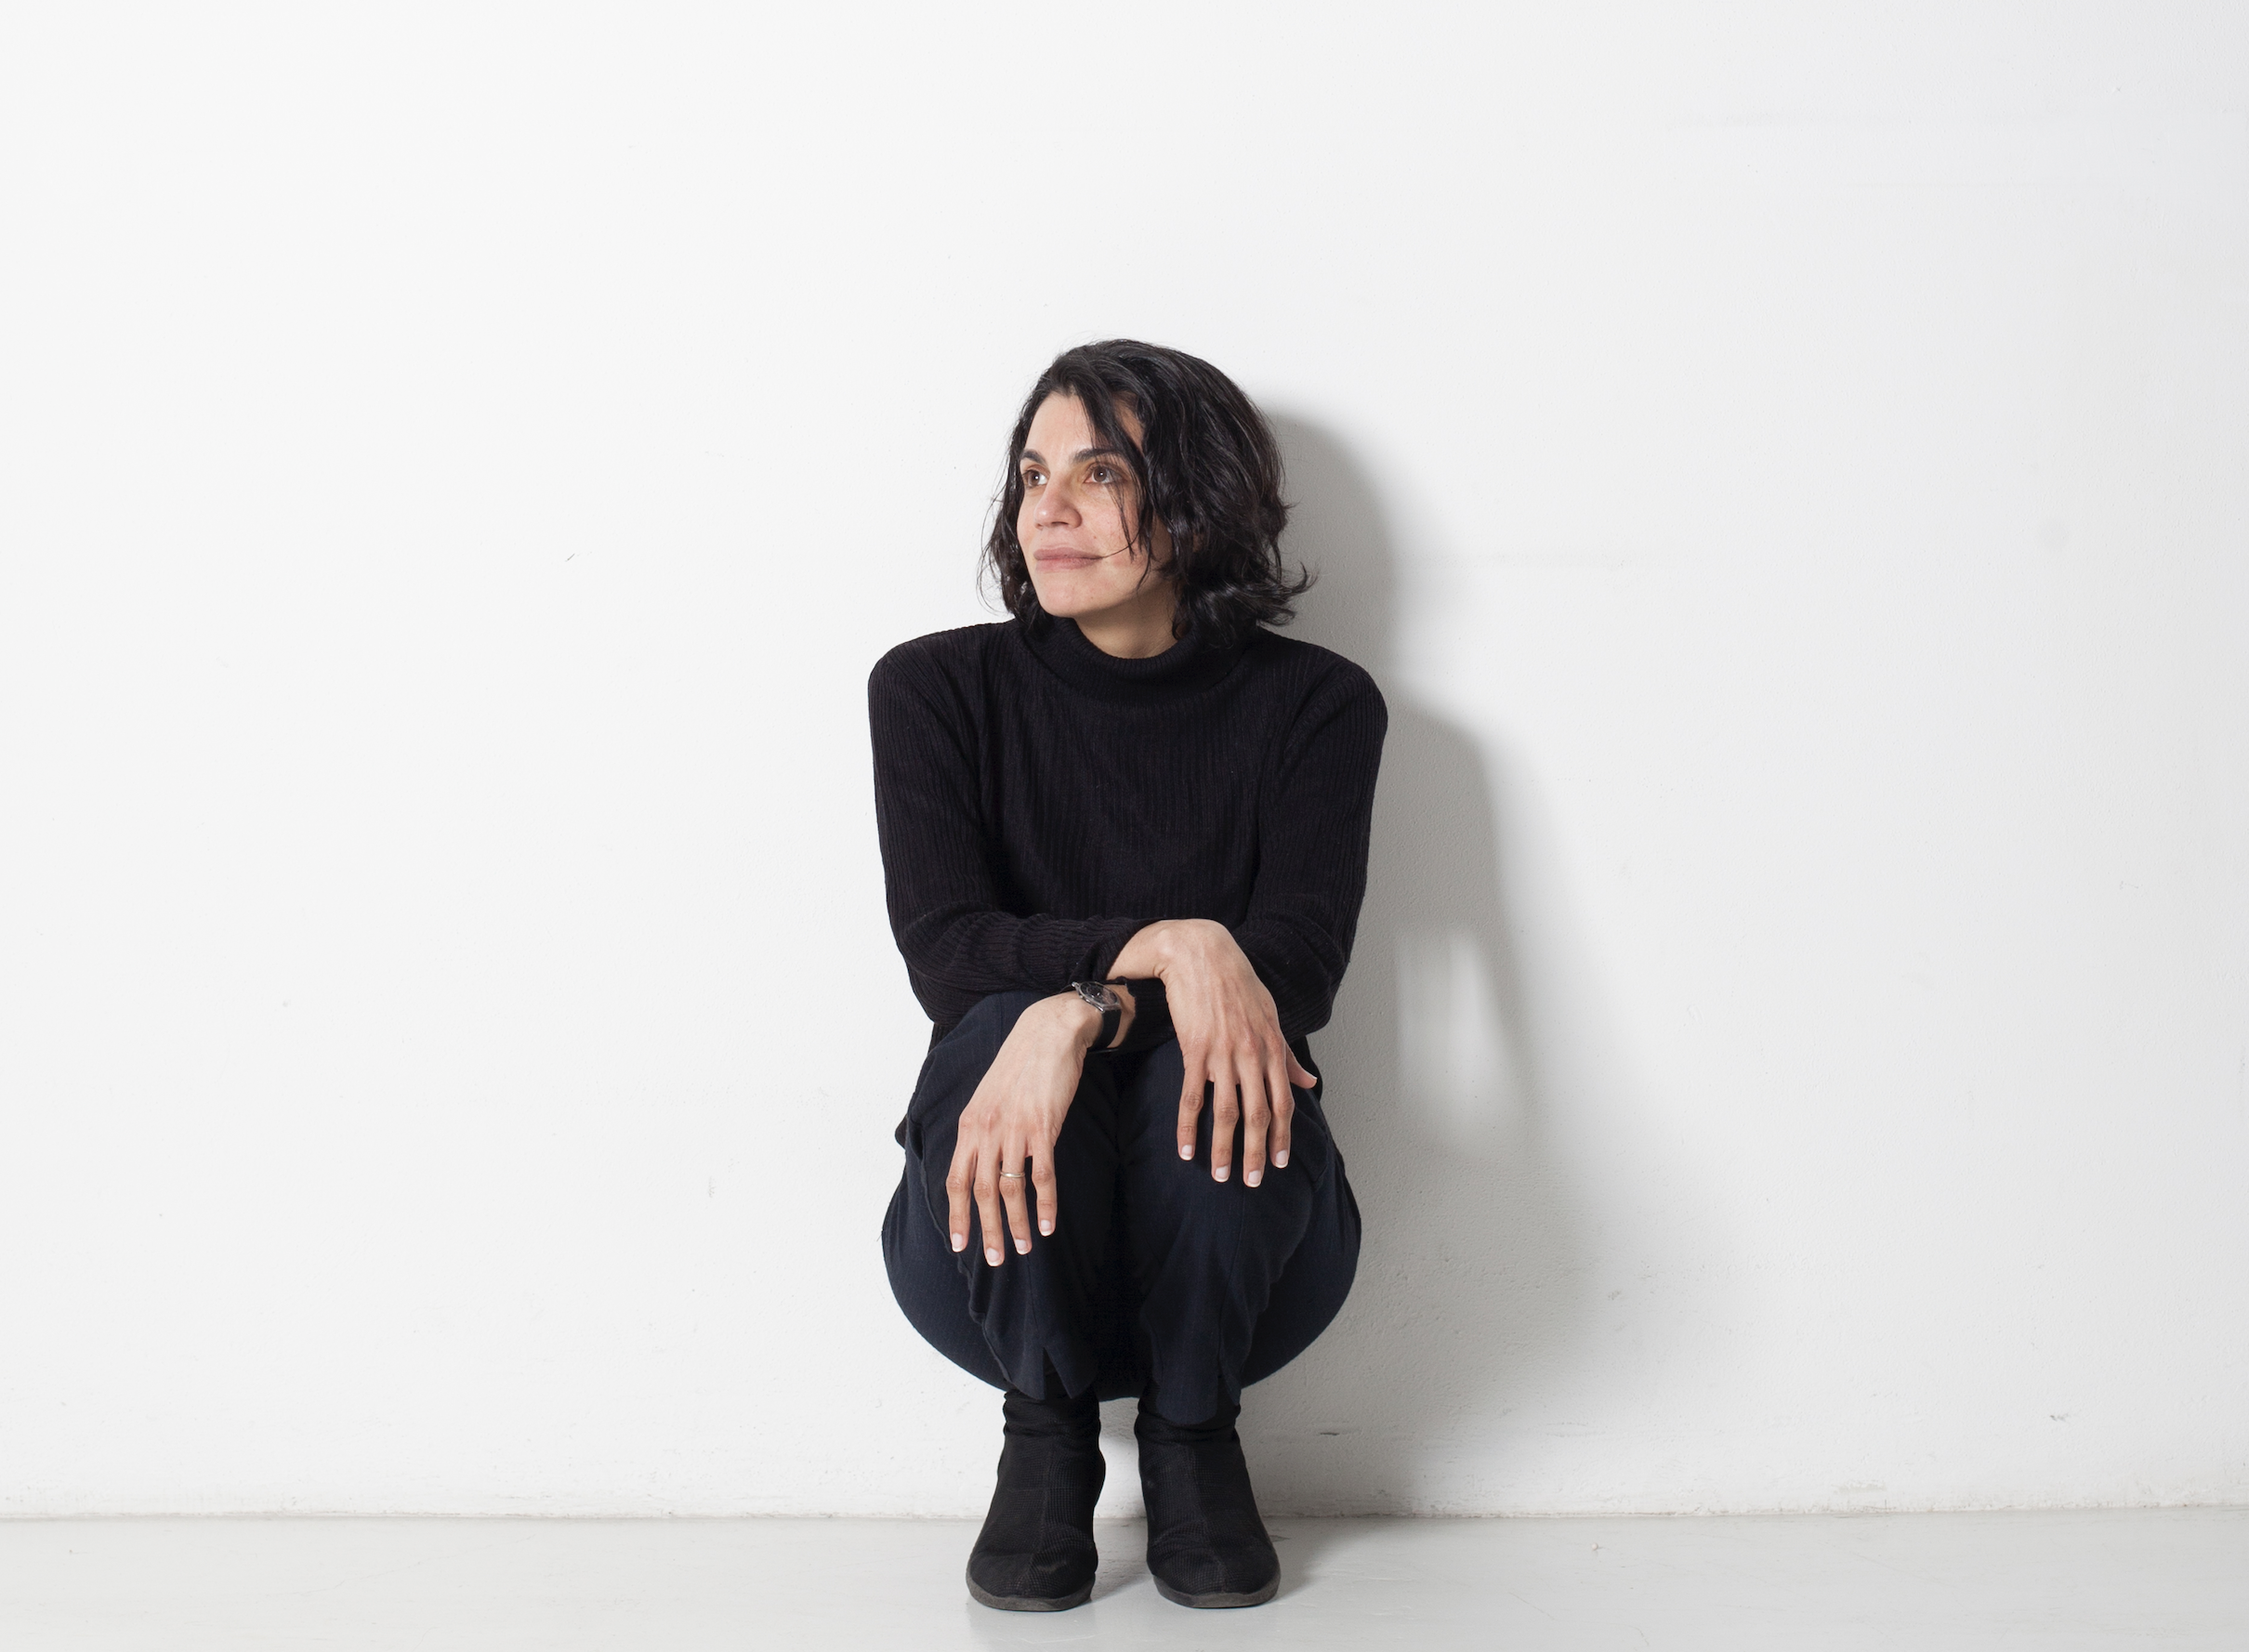 Zasha Colah (co-direttrice artistica di ar/ge kunst Bolzano) nominata curatrice della 13ma Biennale di Berlino, fissata per il 2025